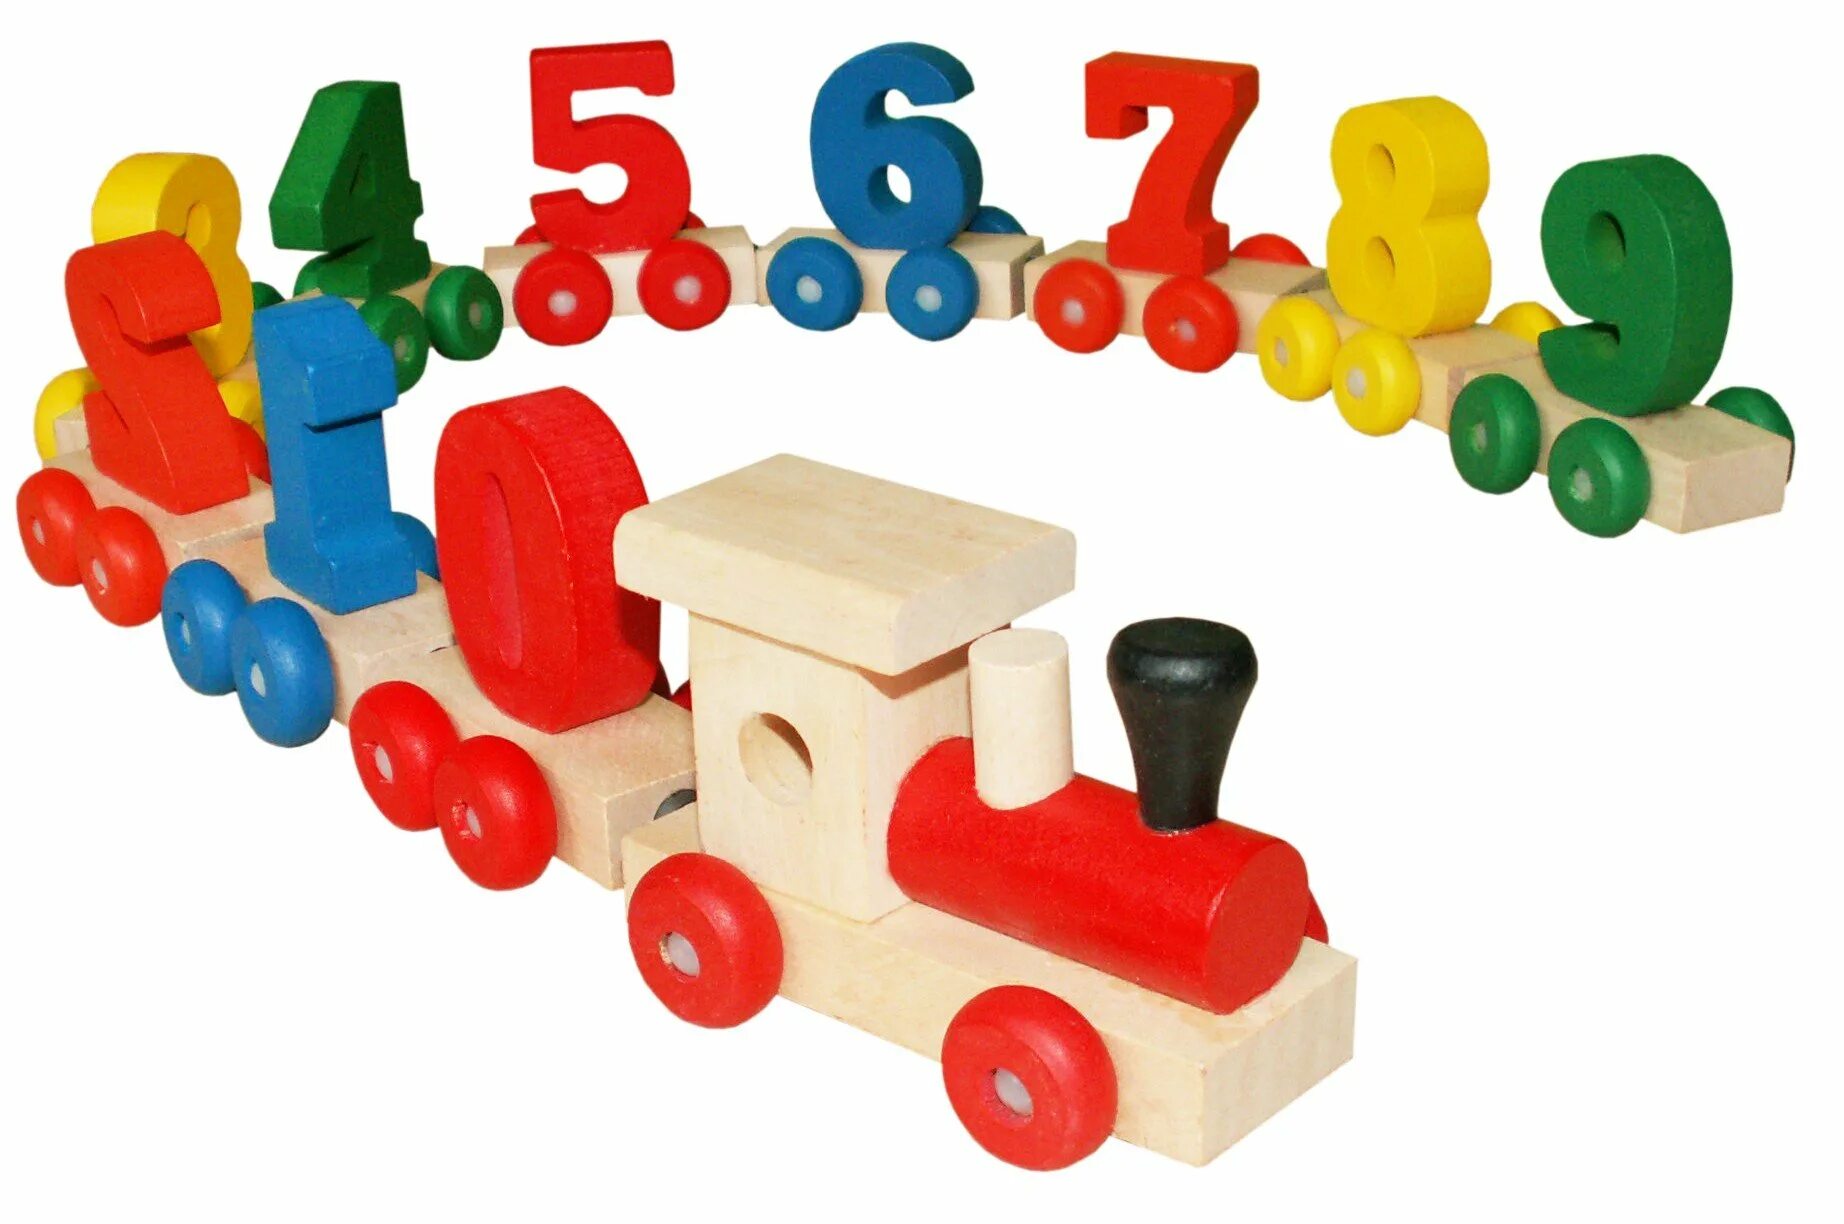 Паровоз цифр. Паровоз игрушка для детей. Паровозик с цифрами. Игрушка деревянная паровозик. Деревянный паровозик с буквами.